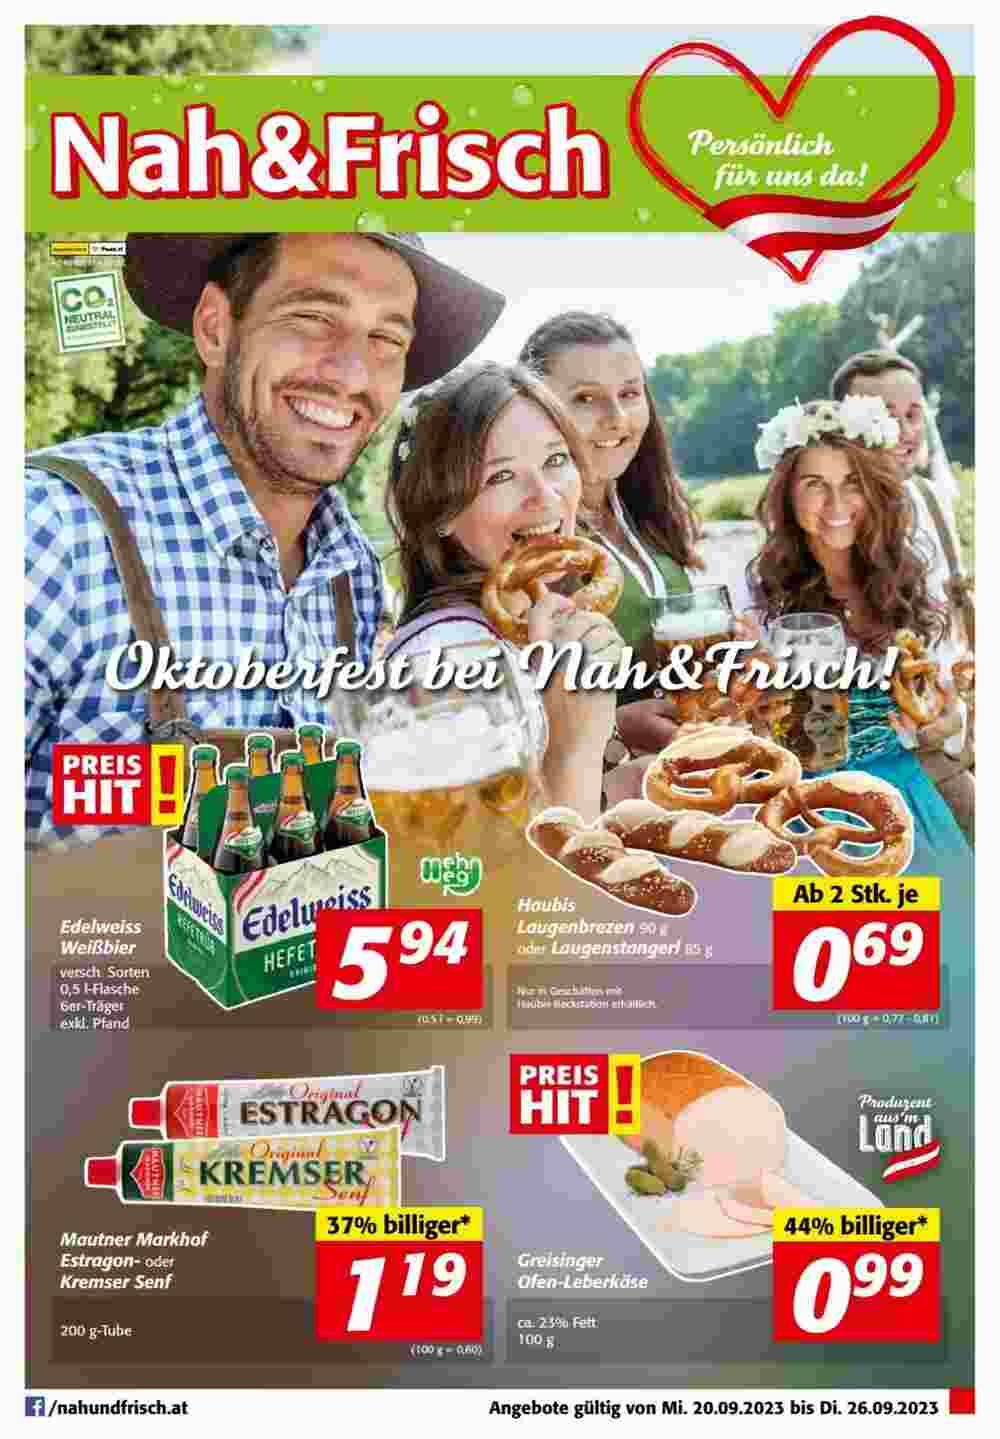 Nah&Frisch Flugblatt (ab 20.09.2023) - Angebote und Prospekt - Seite 1